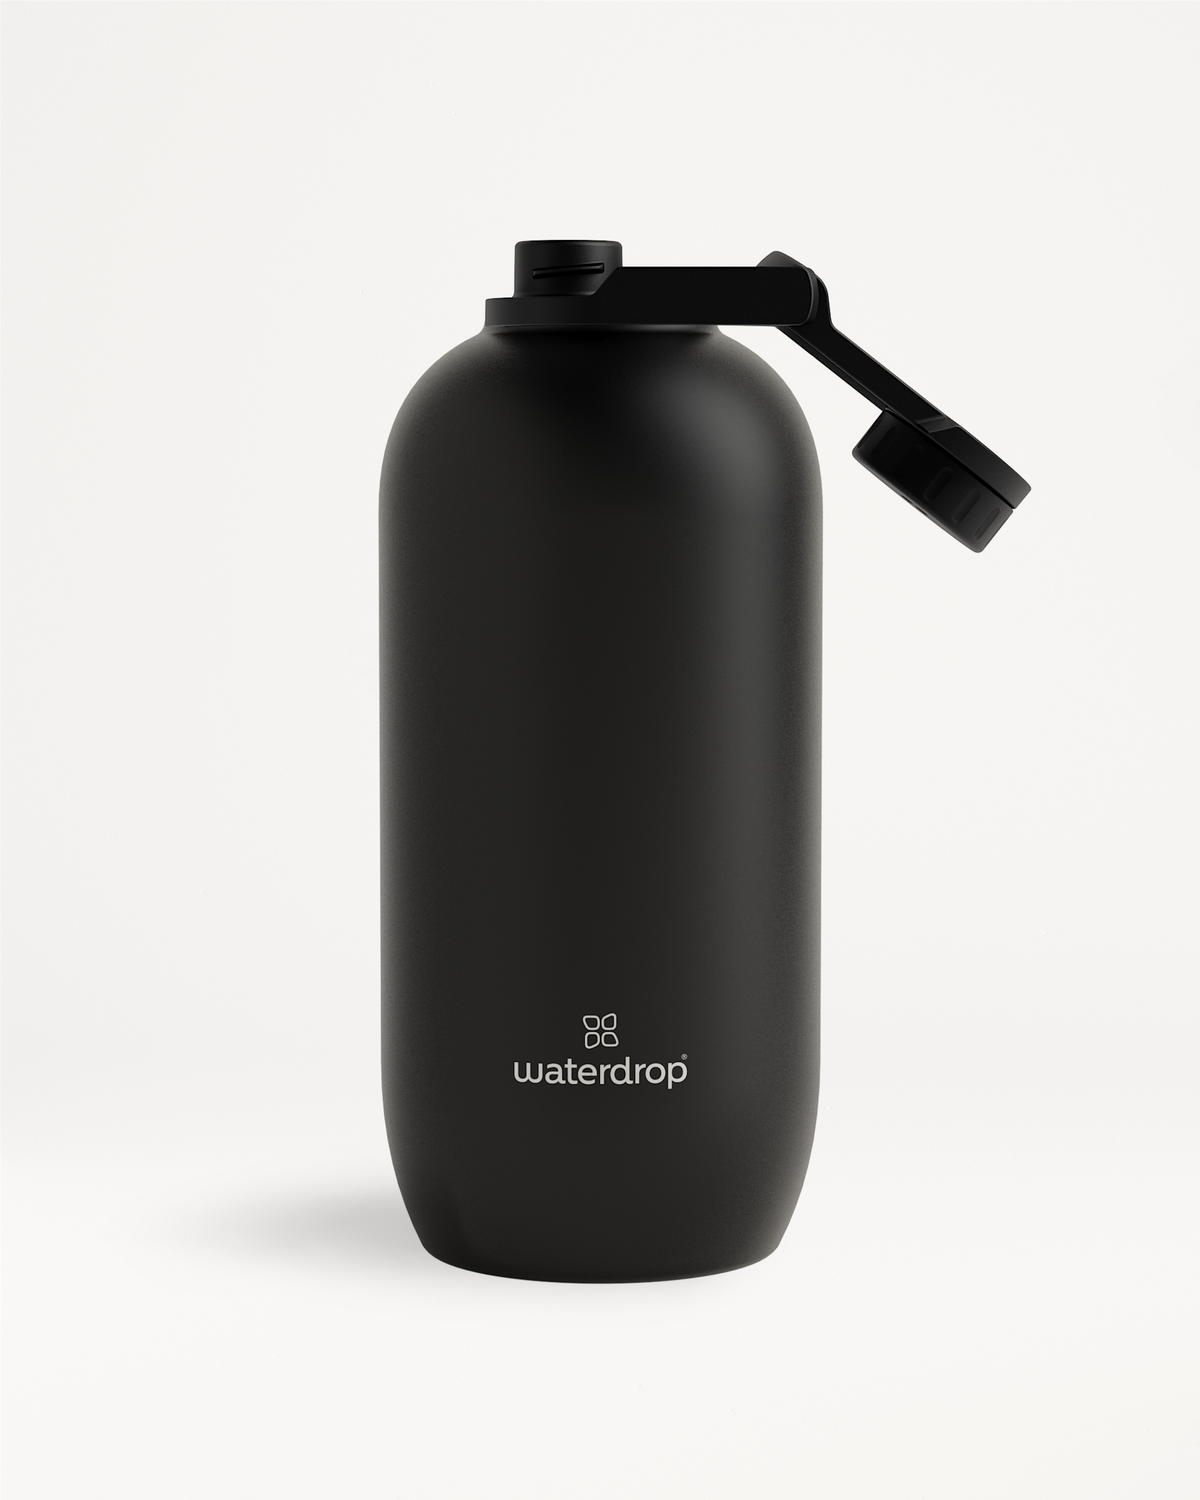 waterdrop - Unsere beliebte Flasche in der RELAX Edition ist seit